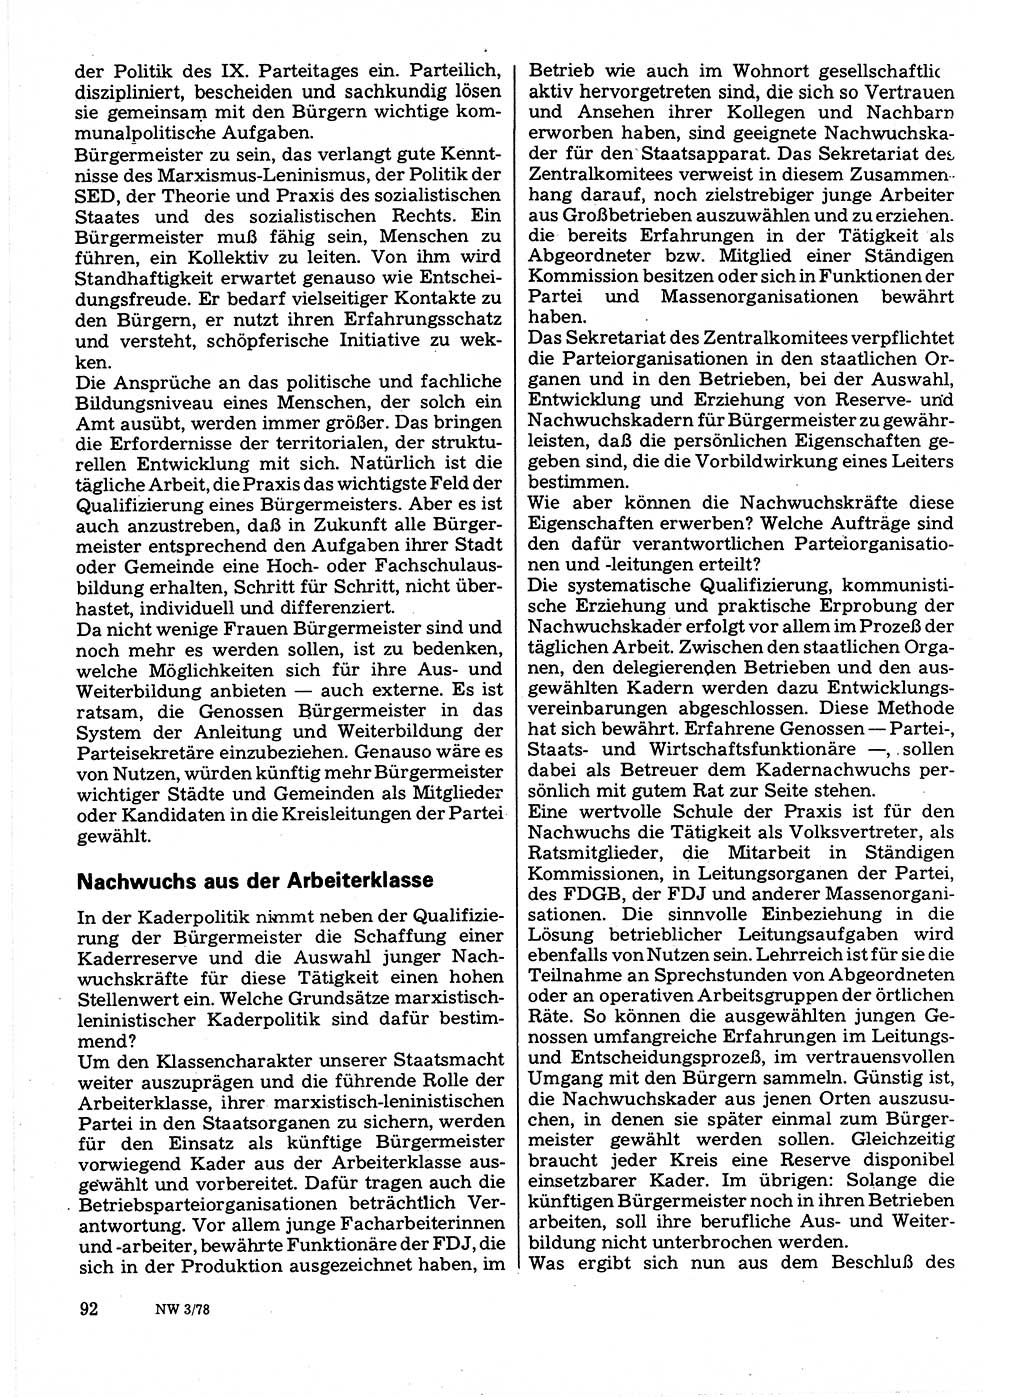 Neuer Weg (NW), Organ des Zentralkomitees (ZK) der SED (Sozialistische Einheitspartei Deutschlands) für Fragen des Parteilebens, 33. Jahrgang [Deutsche Demokratische Republik (DDR)] 1978, Seite 92 (NW ZK SED DDR 1978, S. 92)